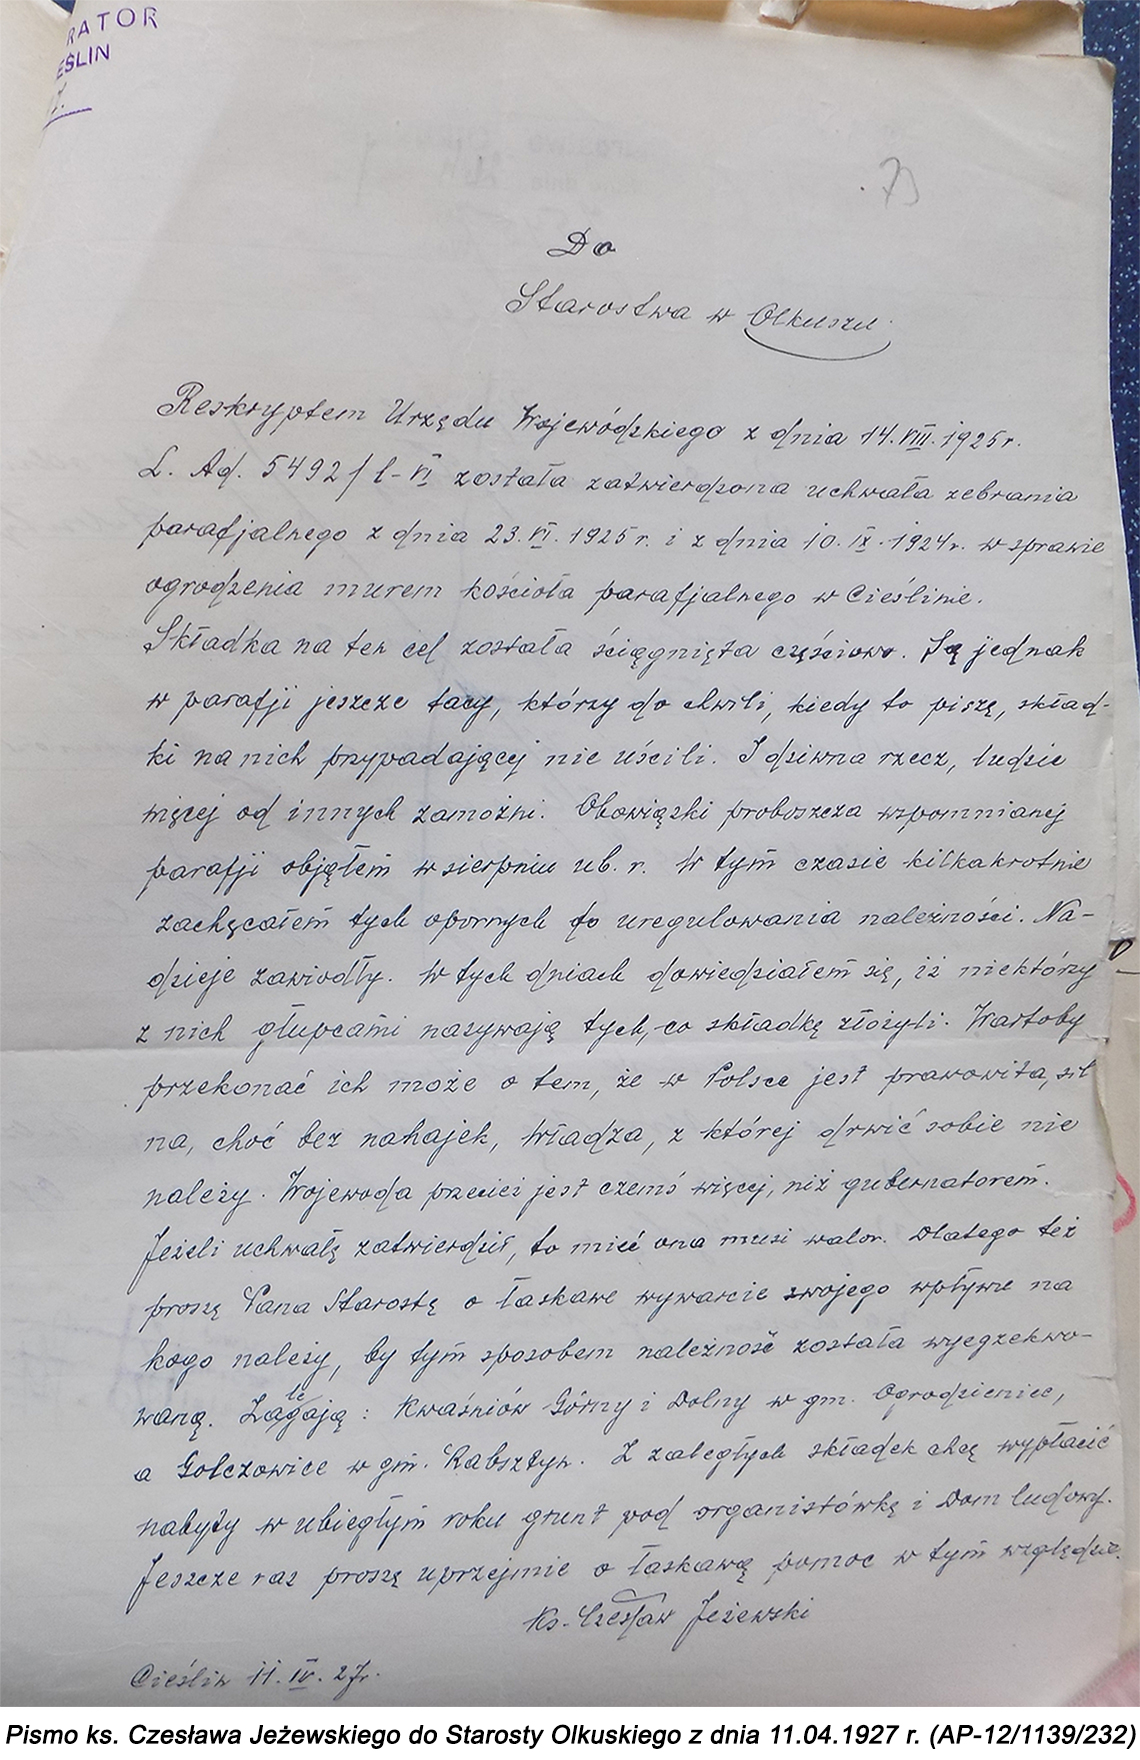 Pismo ks. Czesława Jeżewskiego do Starosty Olkuskiego z dnia 11.04.1927 r. (AP-2/1139/232)